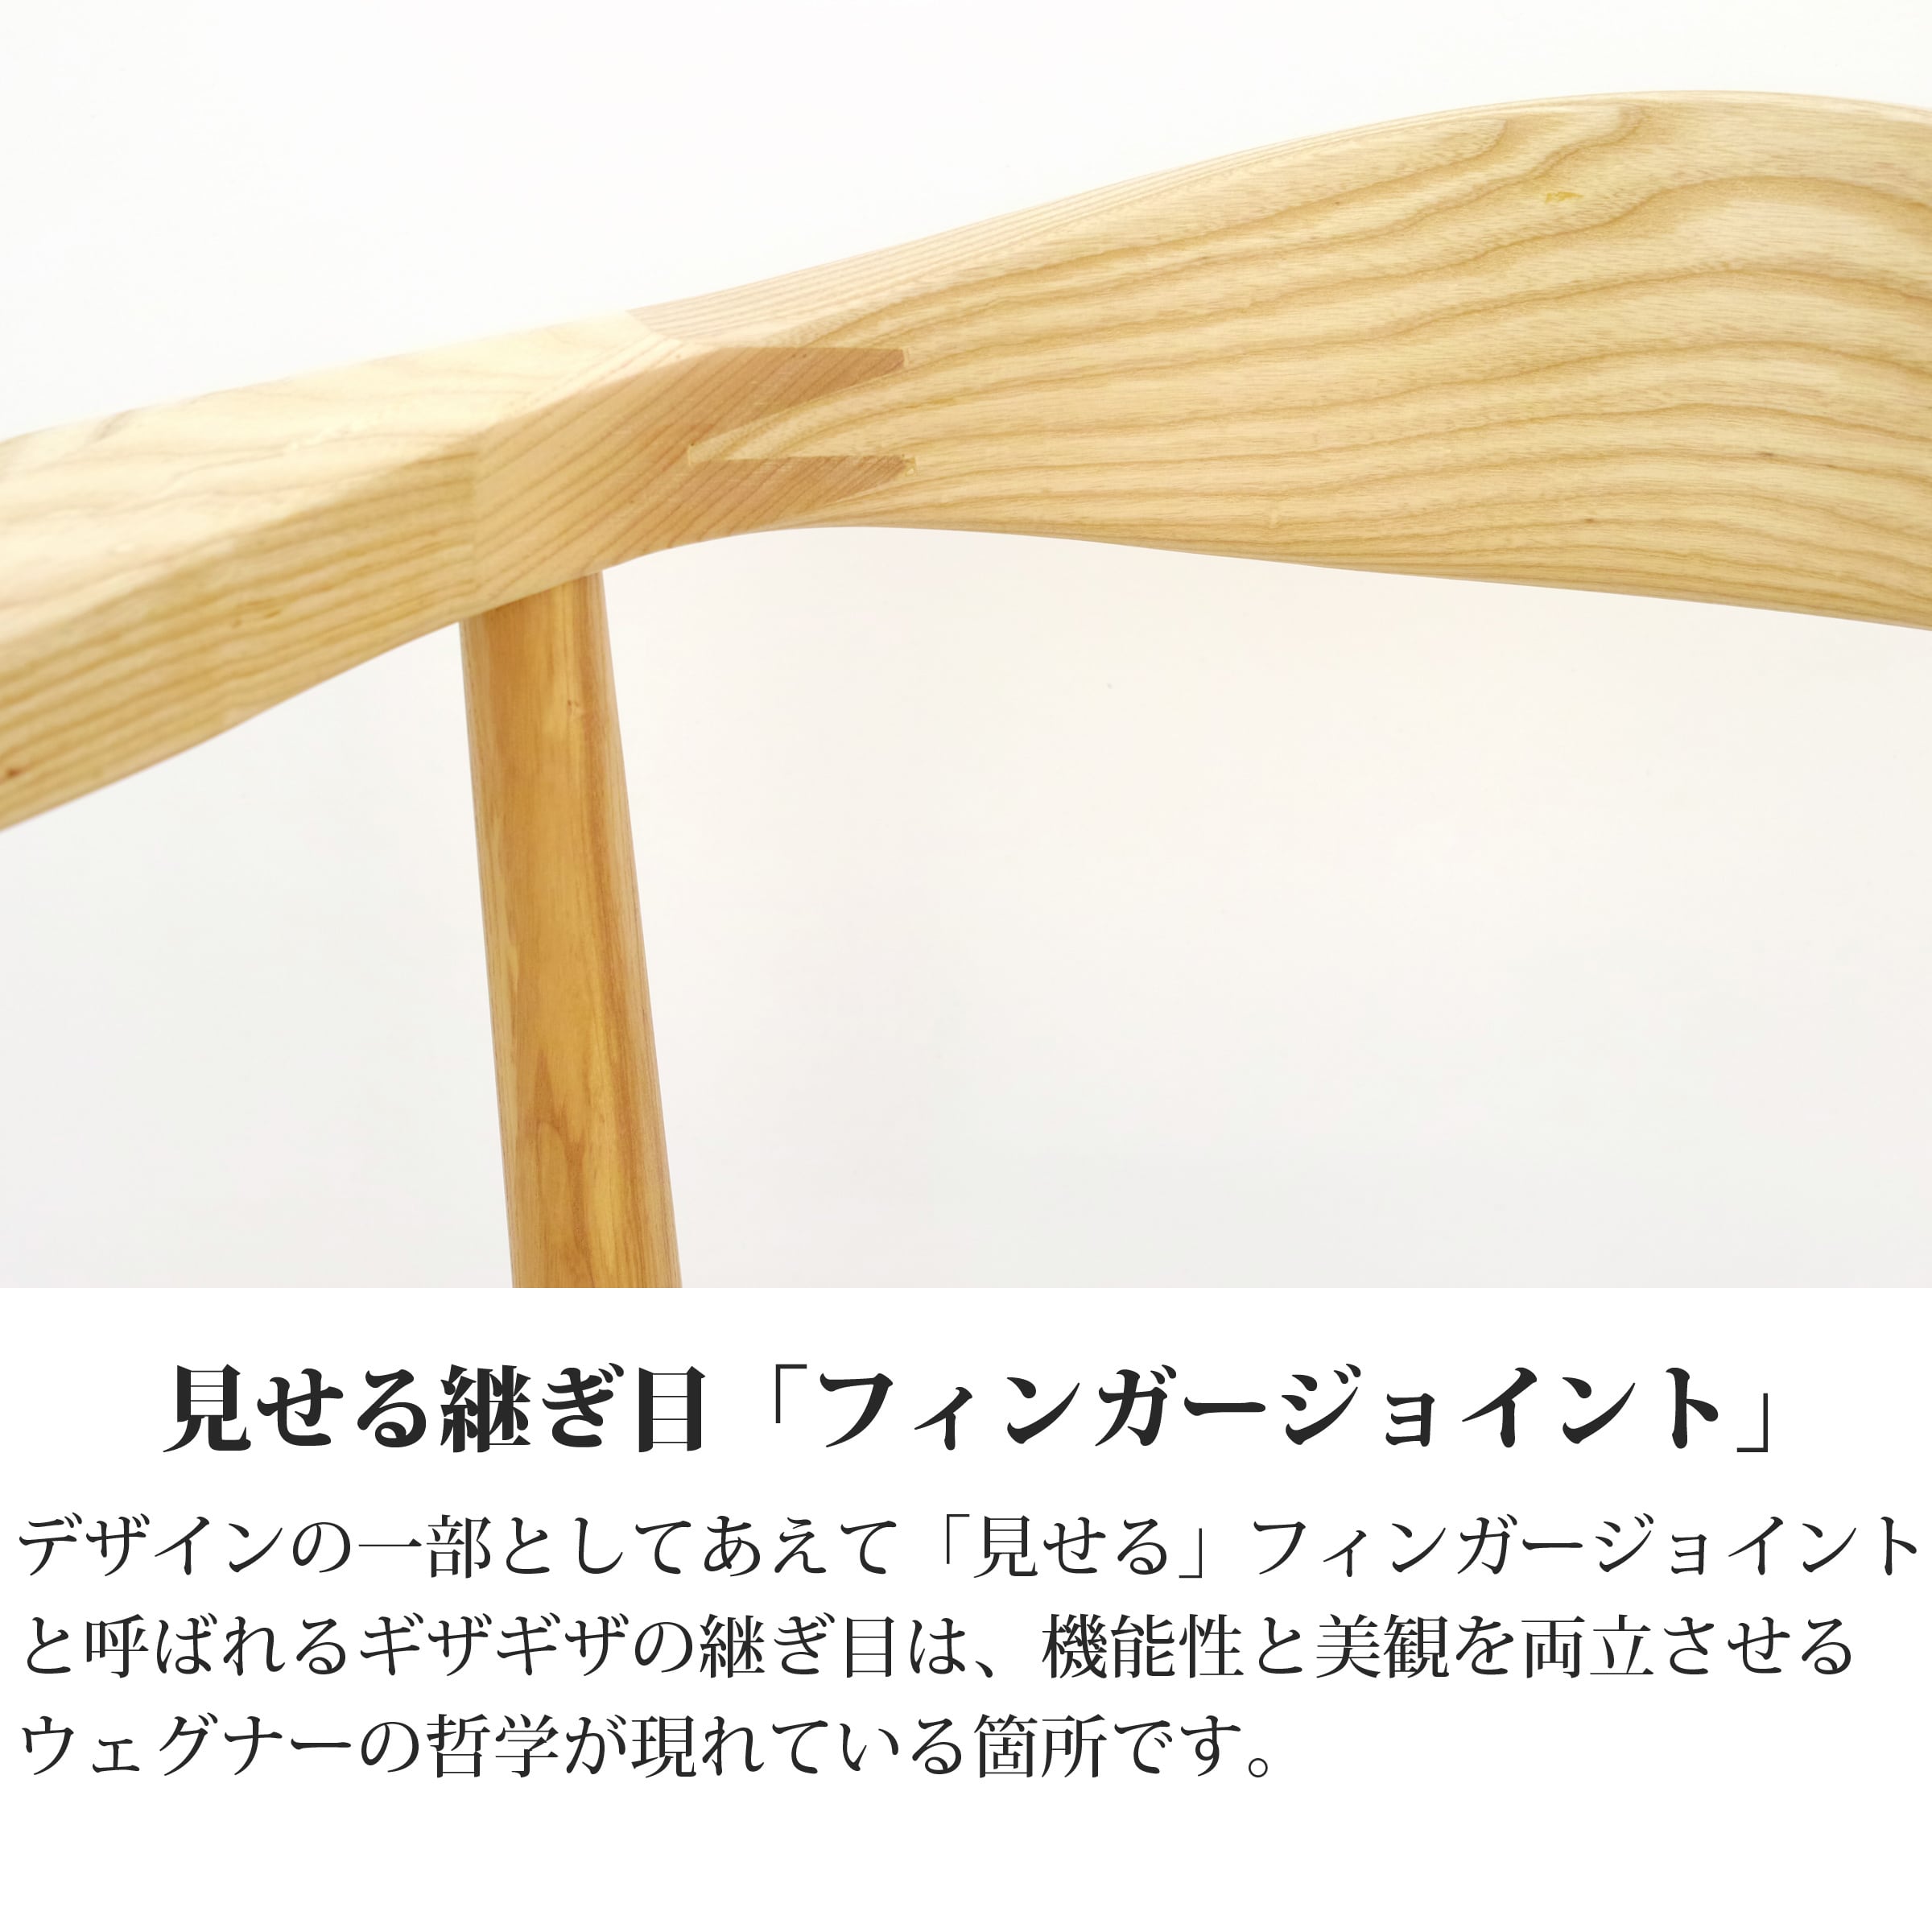 ウェグナー PP501 ザチェア The Chair ザ チェア 【ペーパーコード仕様 】木製 デザイナーズ リプロダクト ダイニングチェア 椅子  北米産ホワイトアッシュ使用